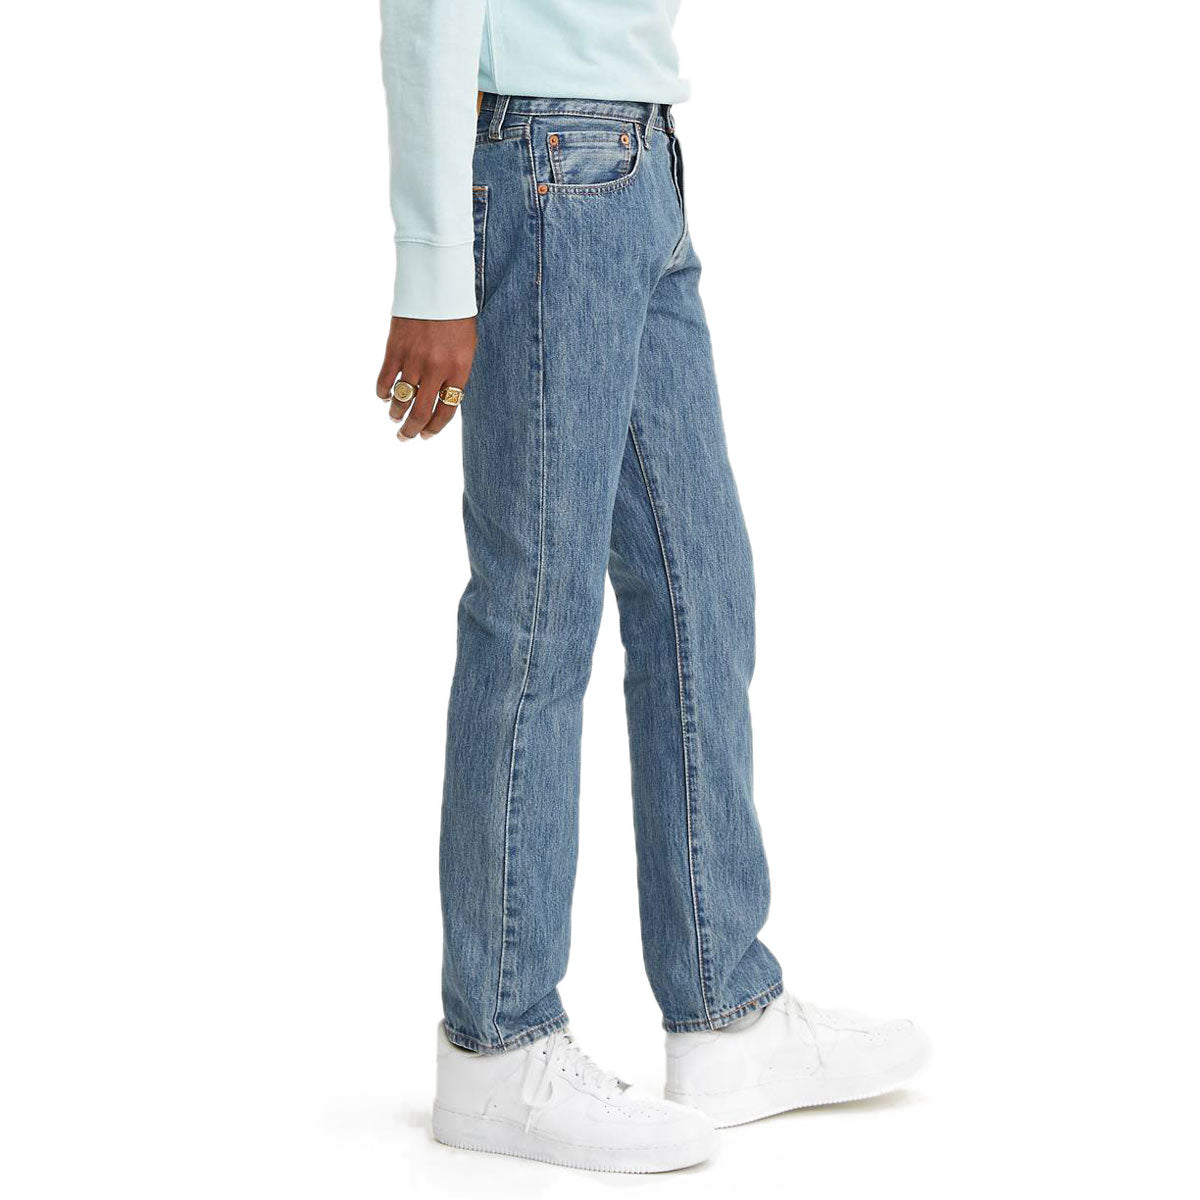 Levi's 501 Original Jeans - Medium Stonewash image 2